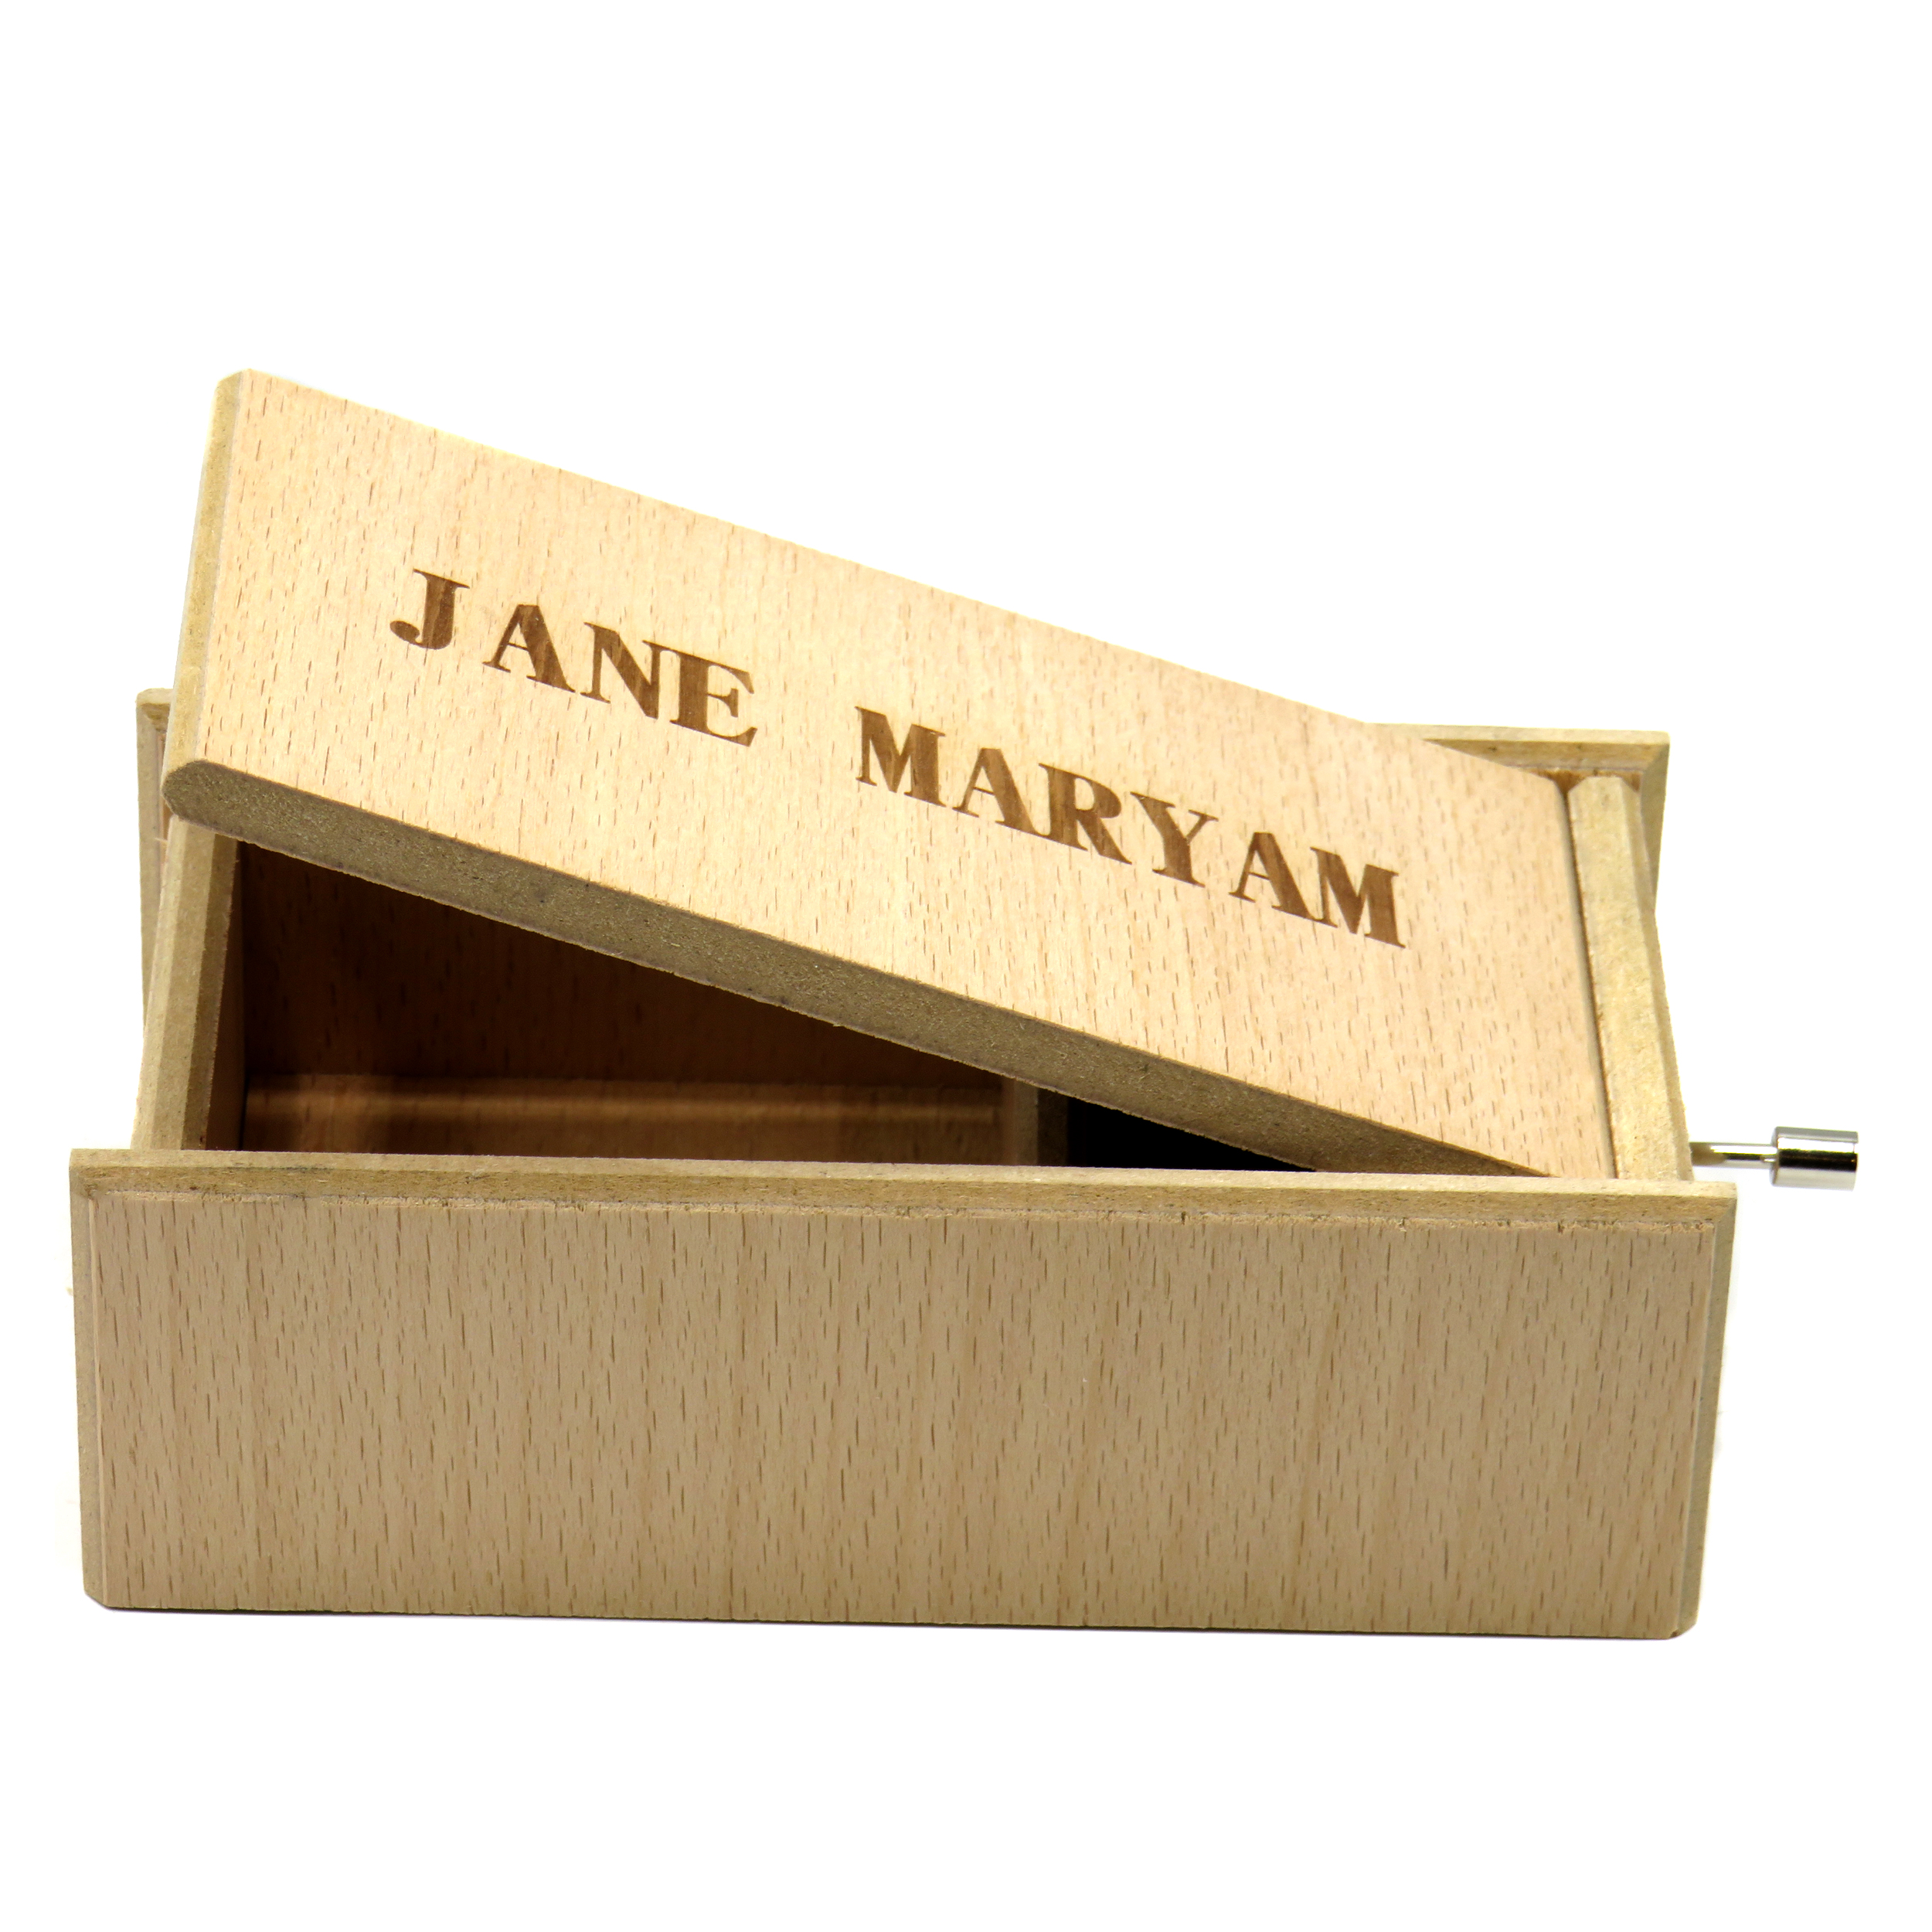 جعبه موزیکال ایل تمپو فلیچیتا مدل JANE MARYAM کد 2200